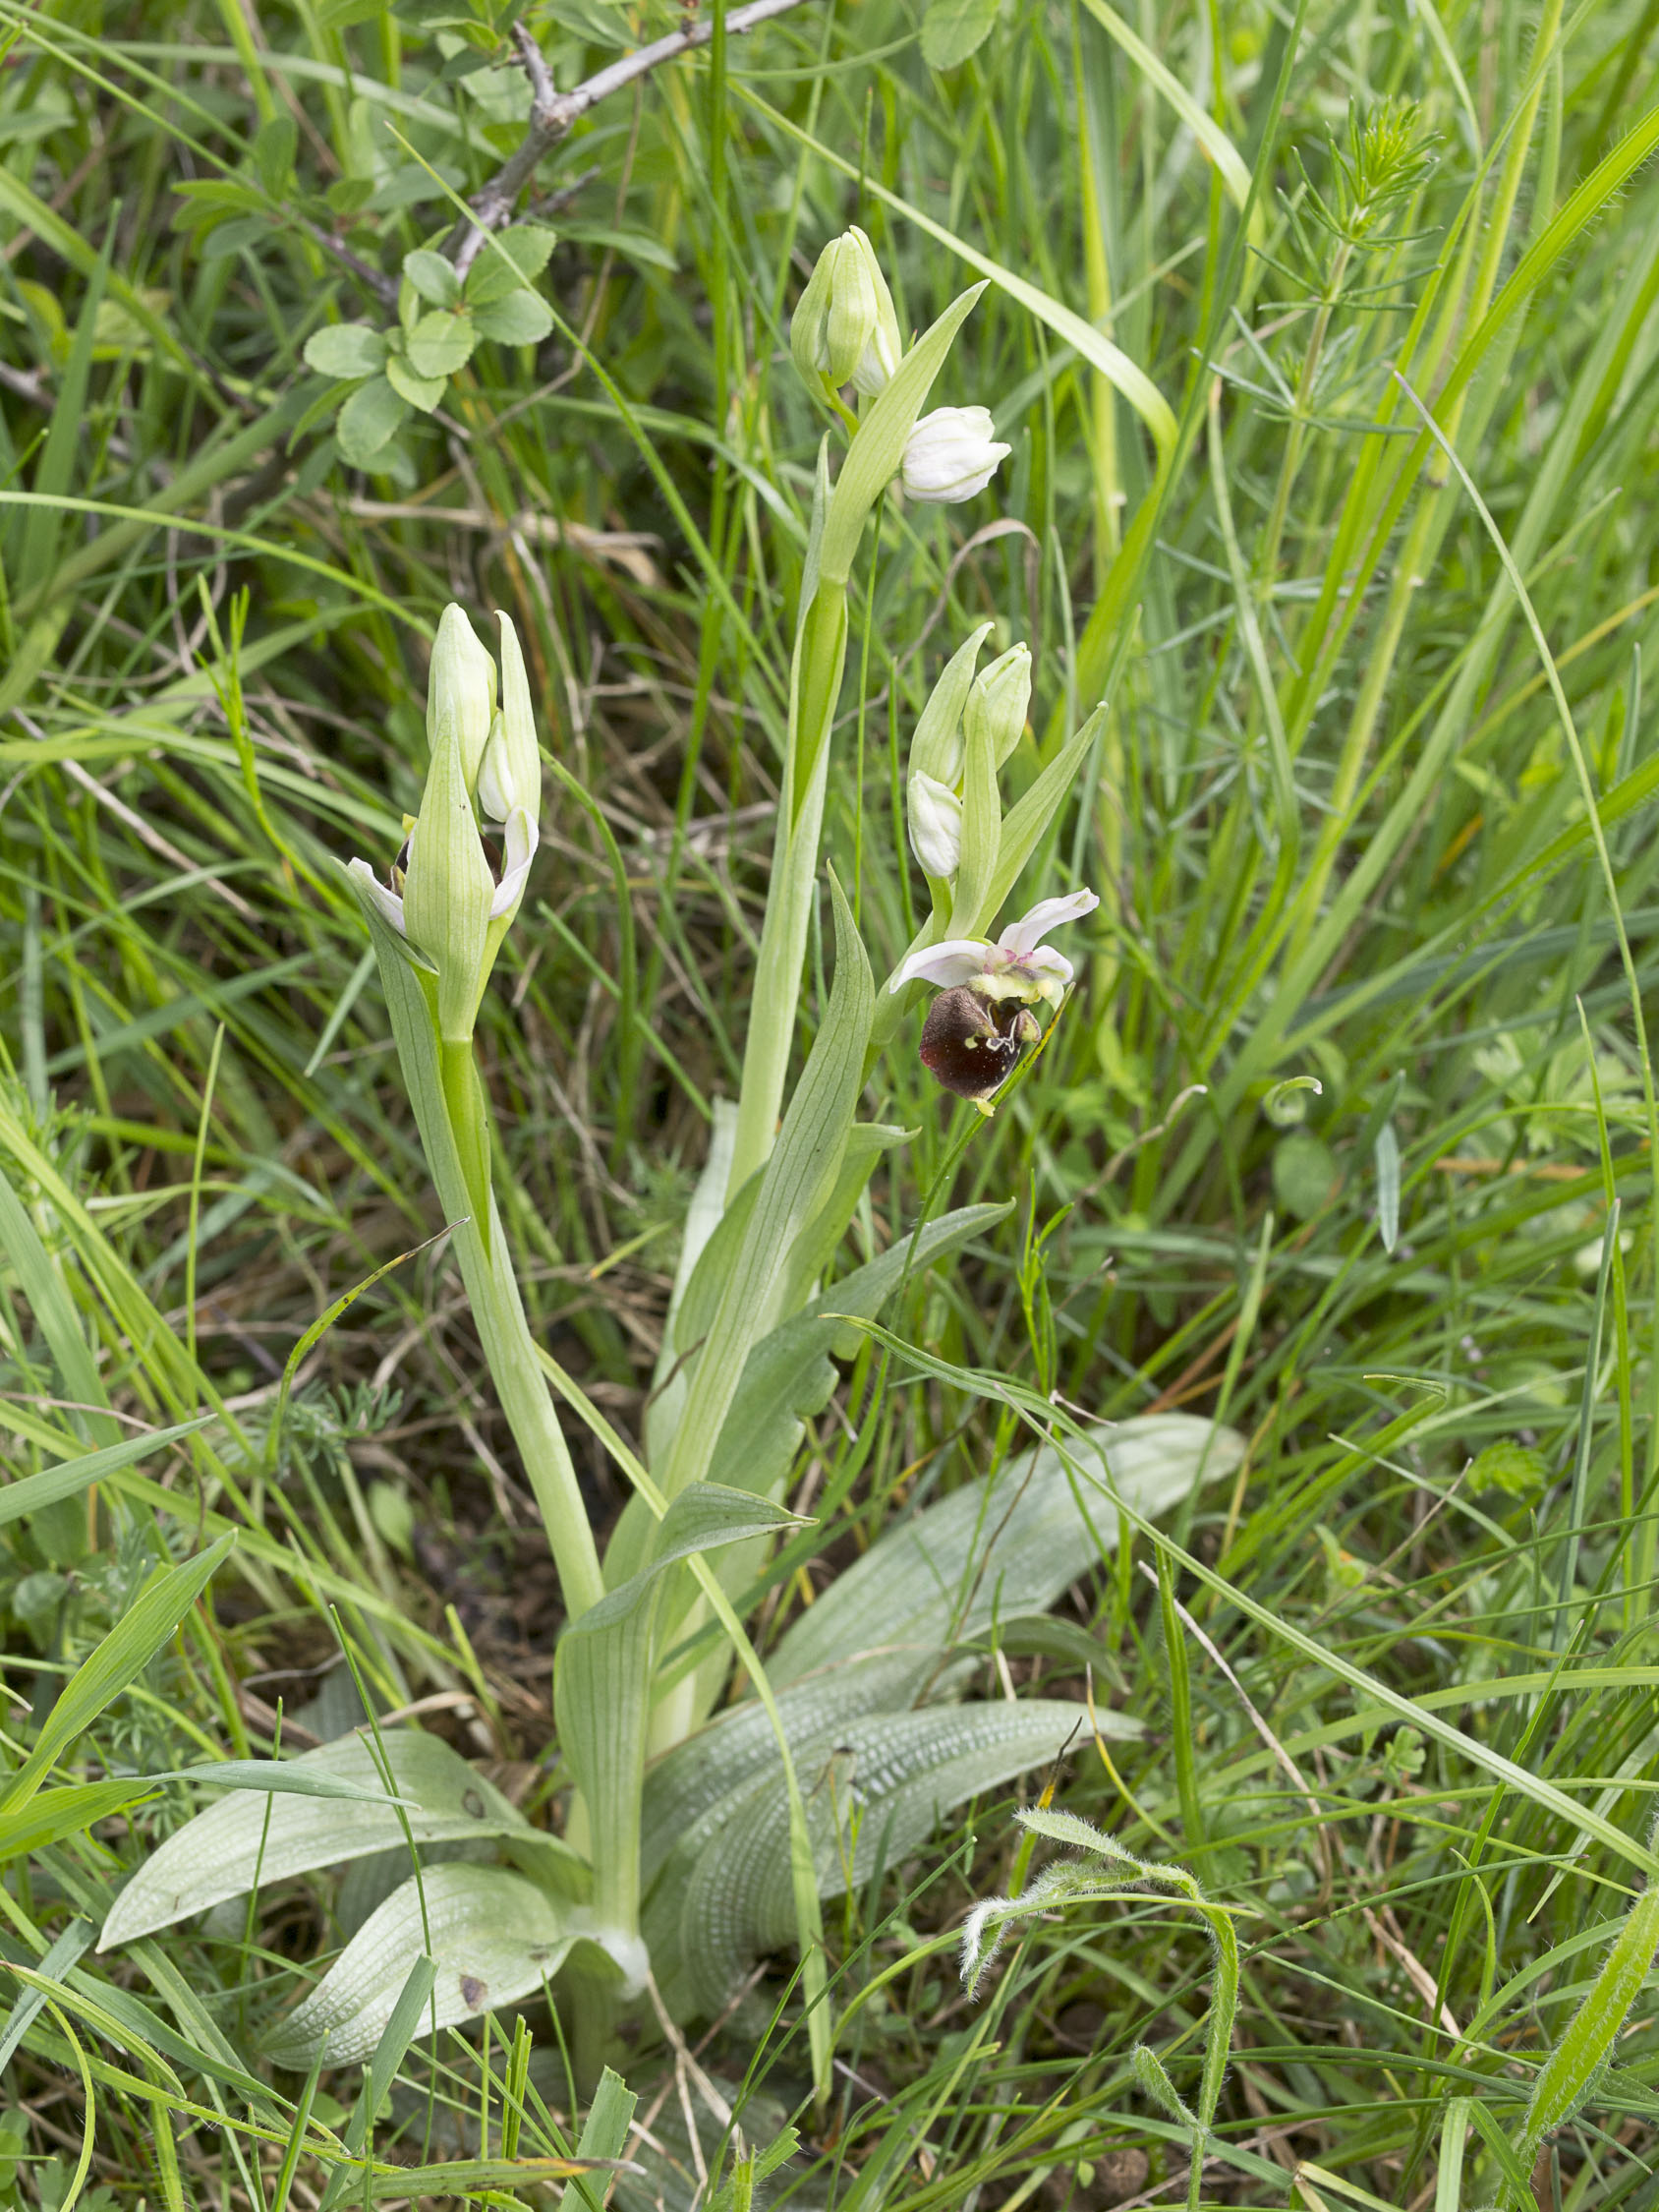 Ophrys fuciflora (F.W.Schmidt) Moench, 1802